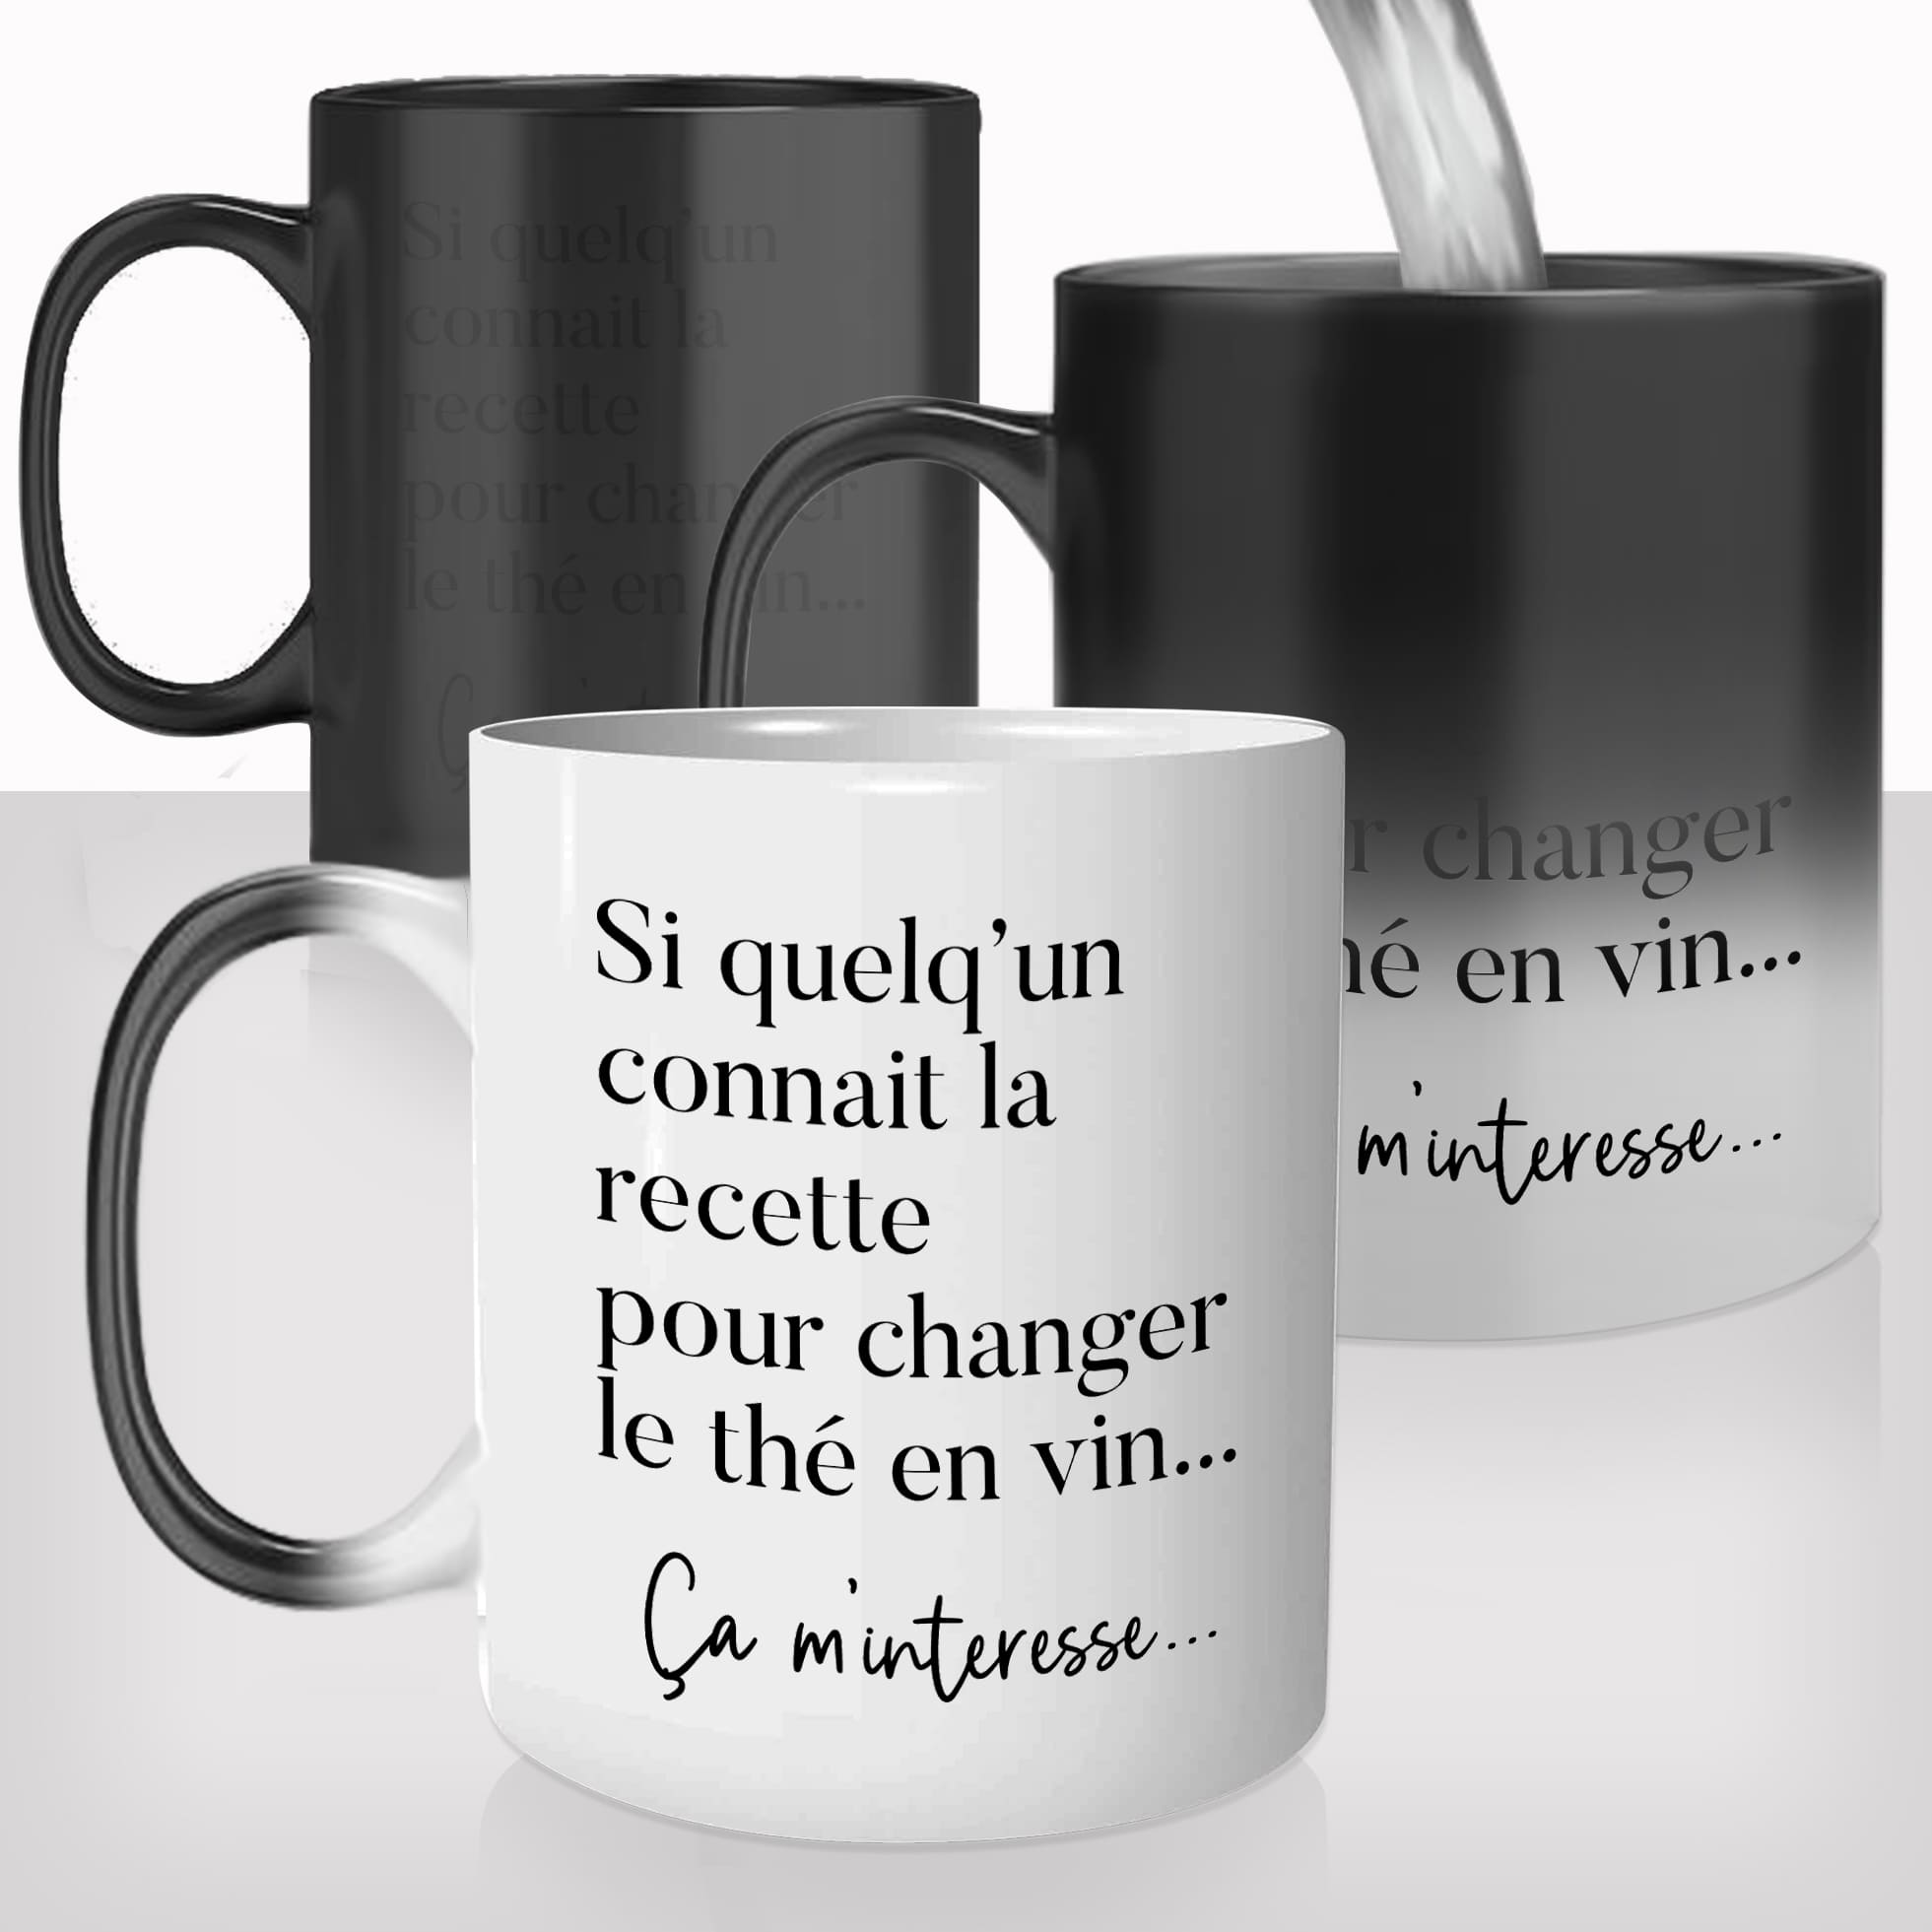 mug-magique-personnalisé-tasse-thermo-reactif-thermique-recette-changer-l'eau-en-vin-dieu-jésus-thé-apéro-drole-idée-cadeau-original-fun